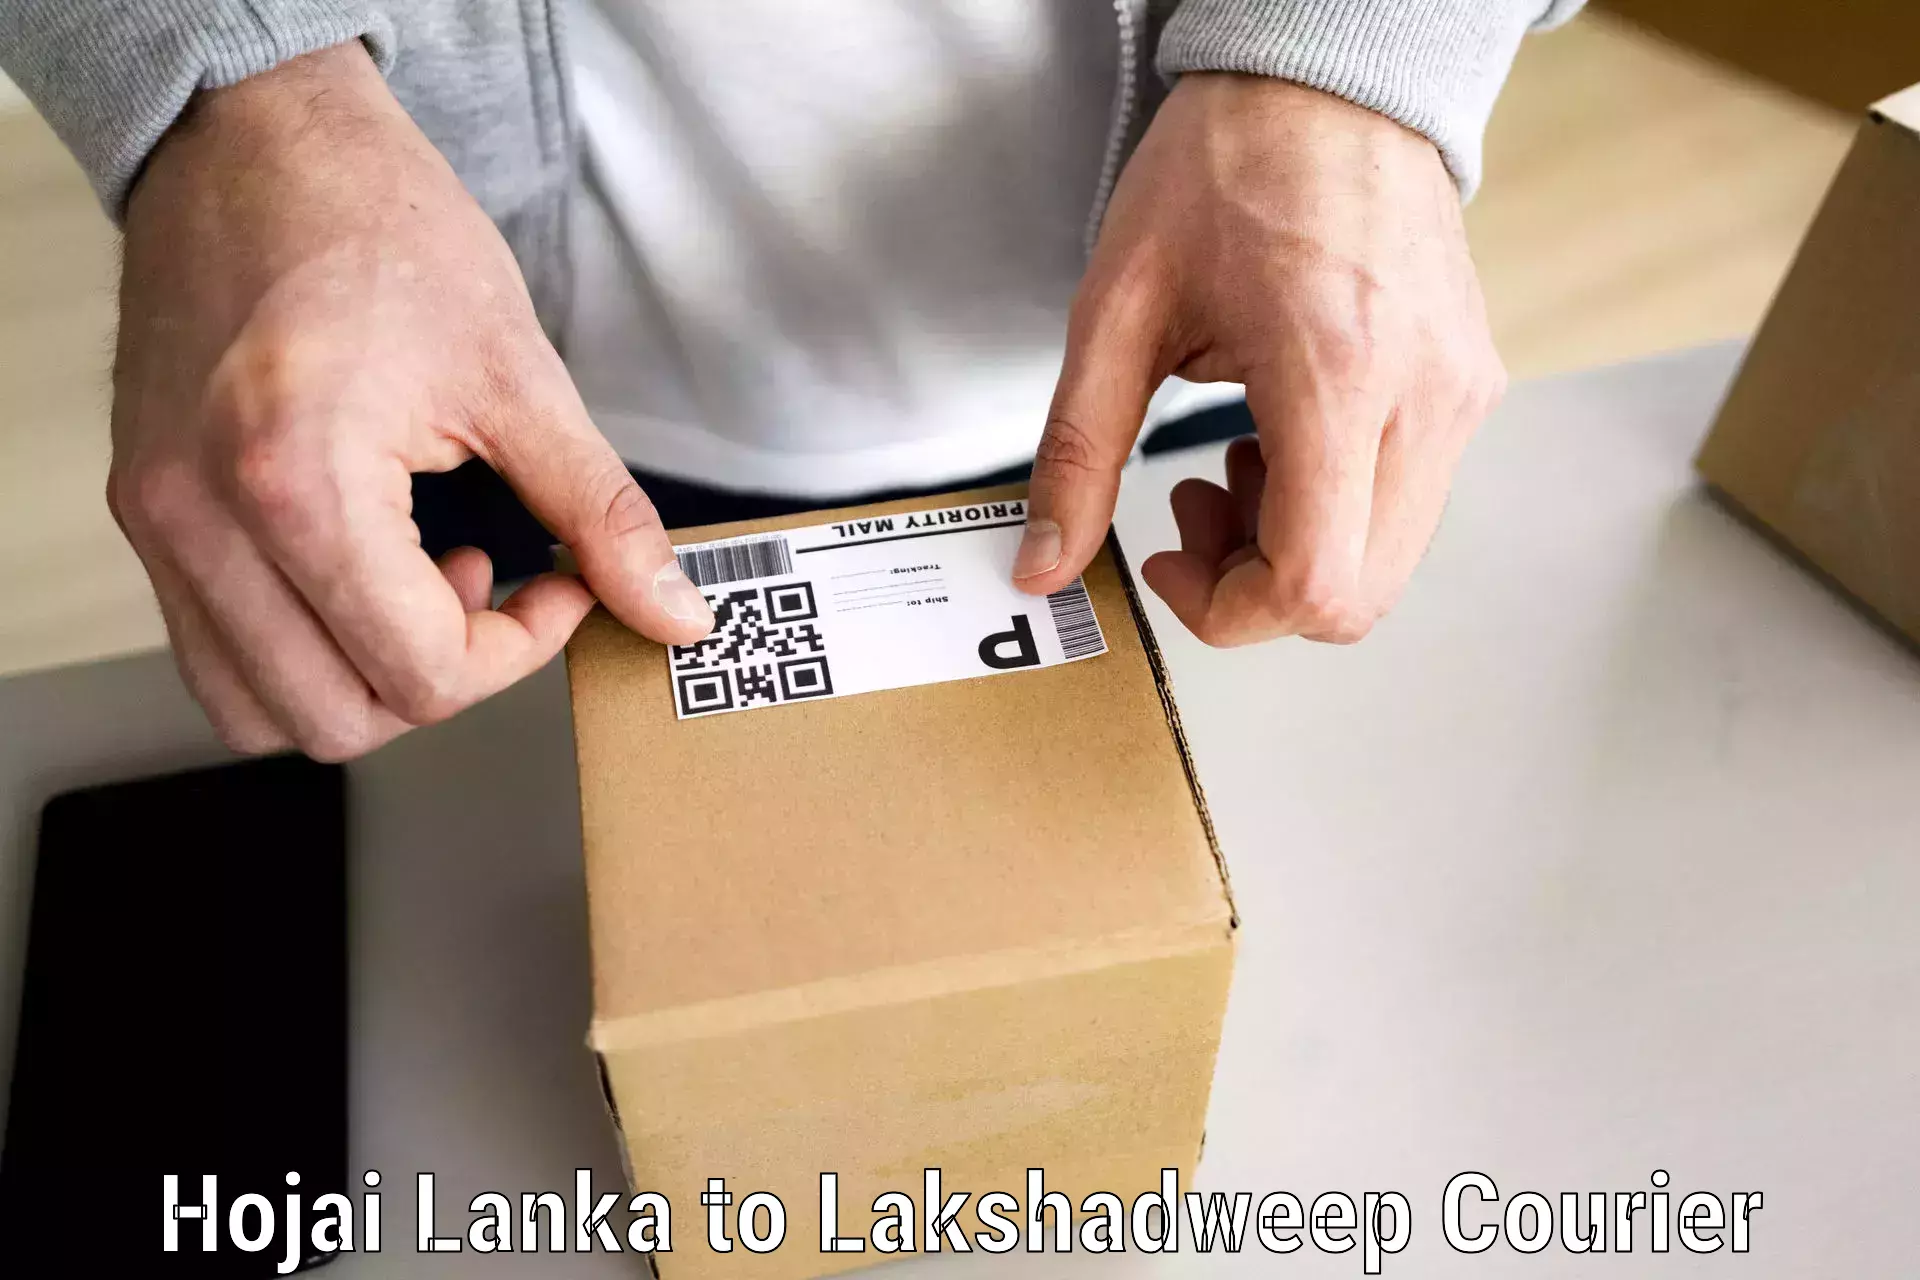 Furniture transport experts Hojai Lanka to Lakshadweep